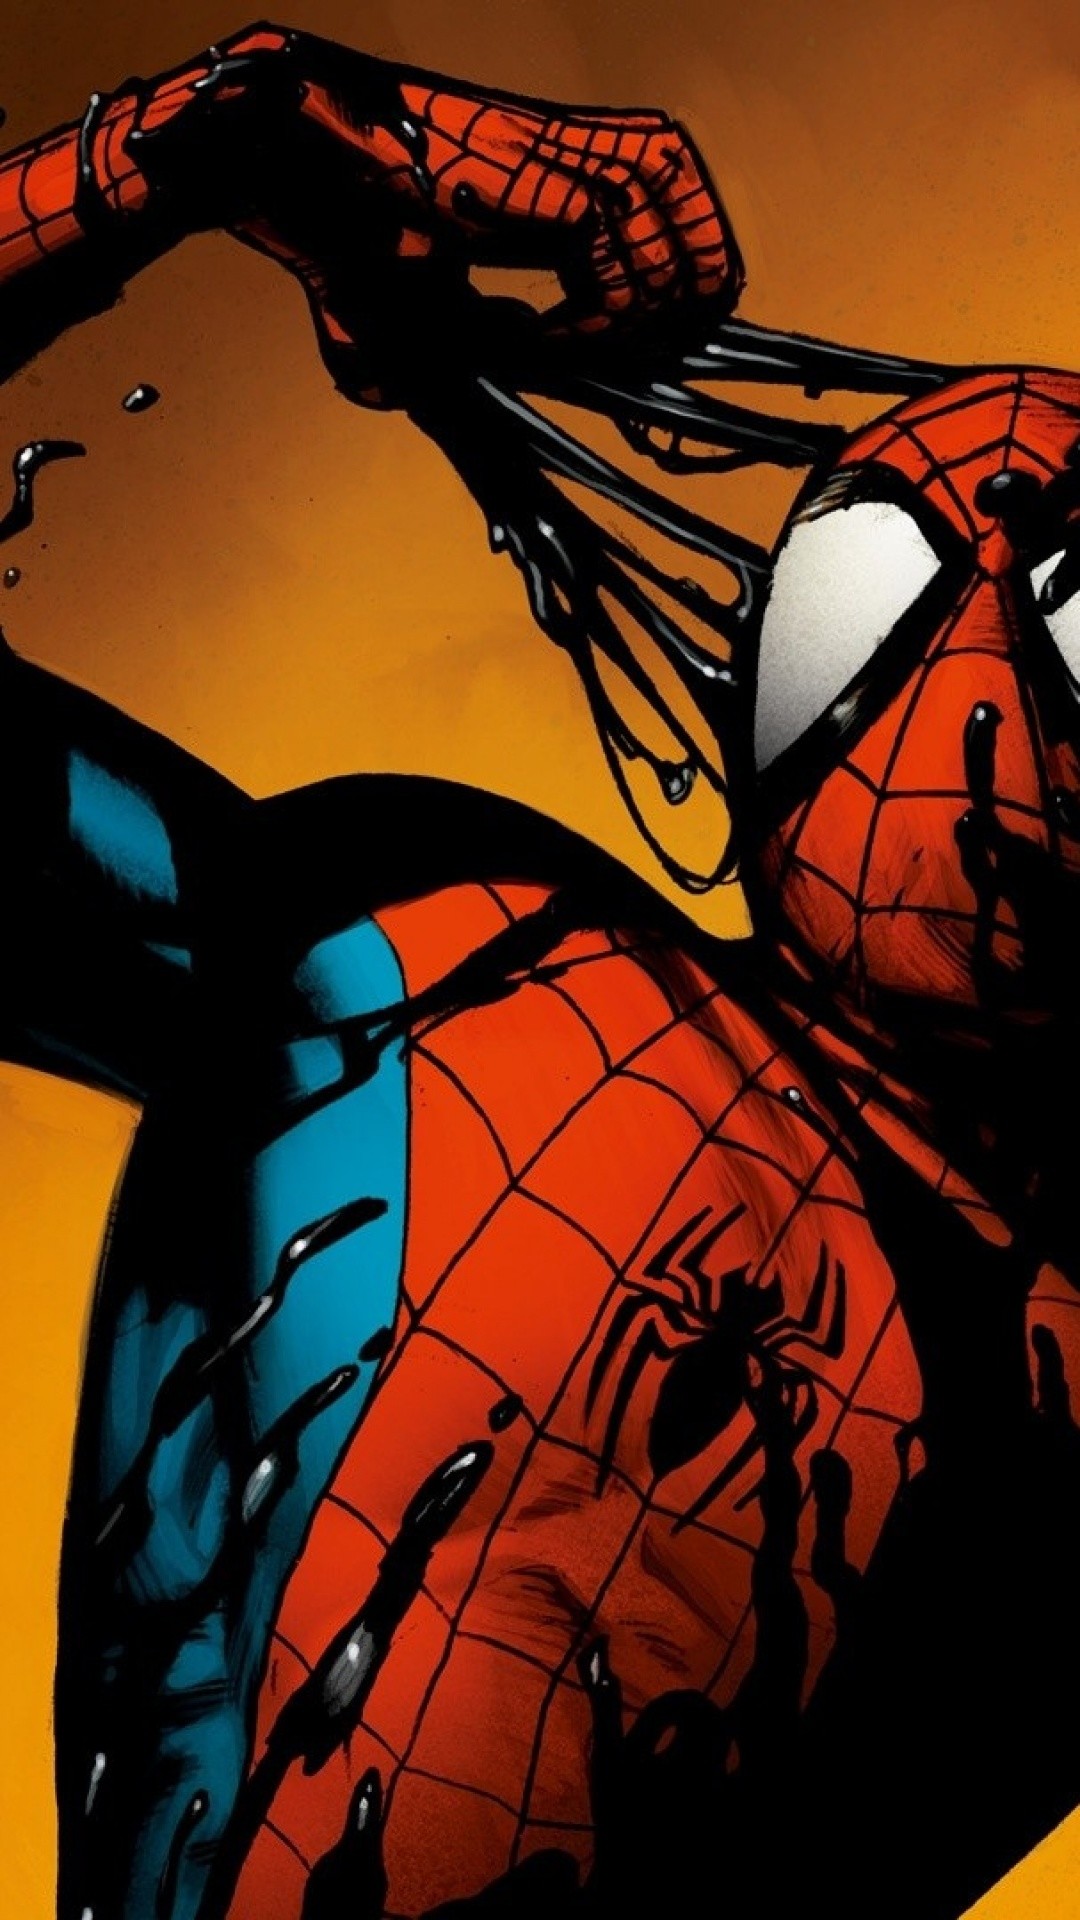 fond d'écran spiderman hd pour mobile,homme araignée,personnage fictif,fiction,des bandes dessinées,super héros